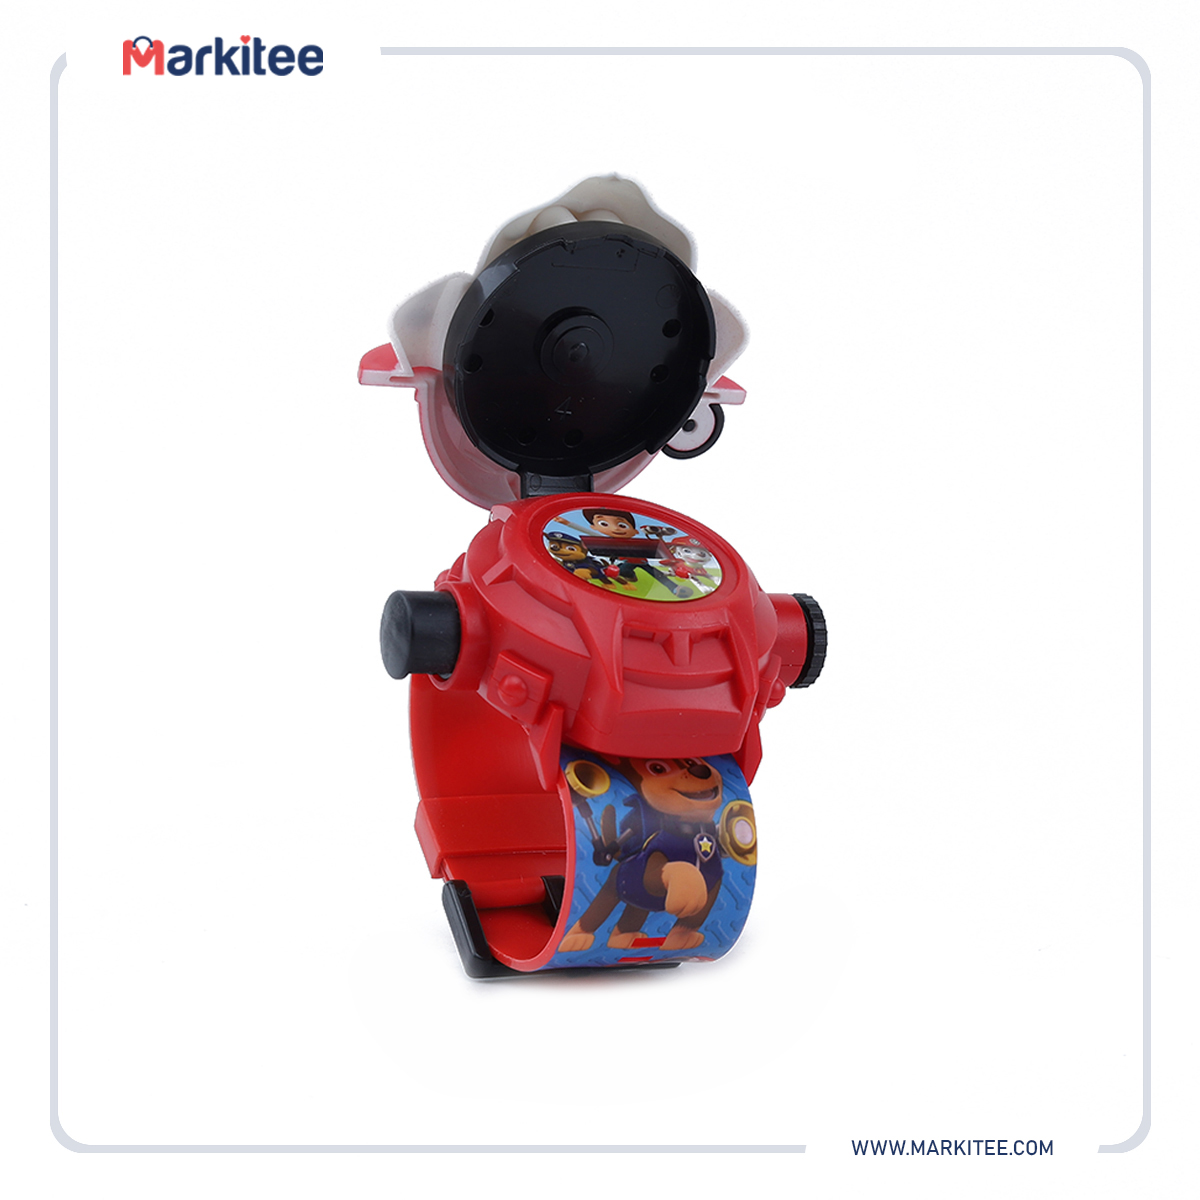 ماركيتي-markitee-20220519053132339_Markitee-Toys-TY-123-8(2).jpg